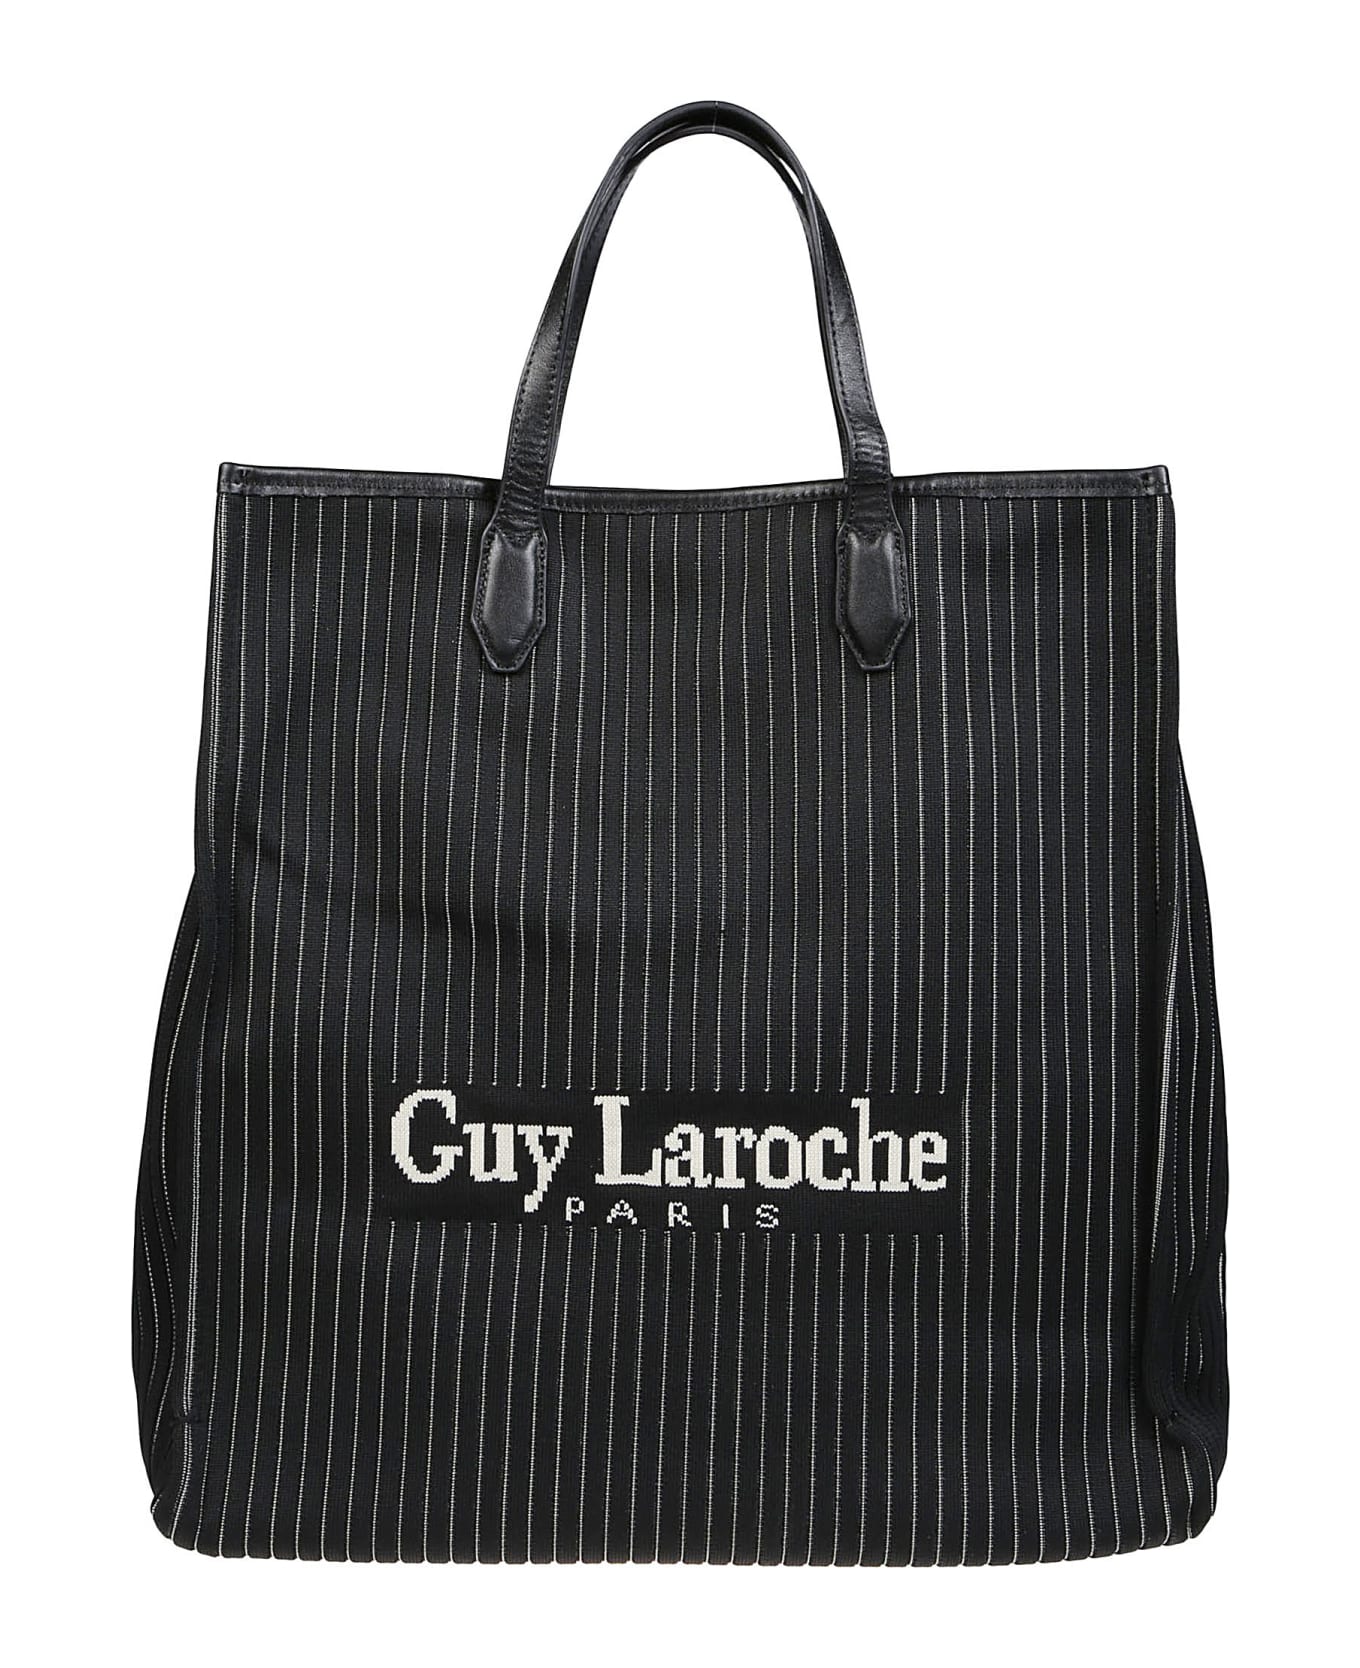 Guy Laroche Large Tote Bag - Black